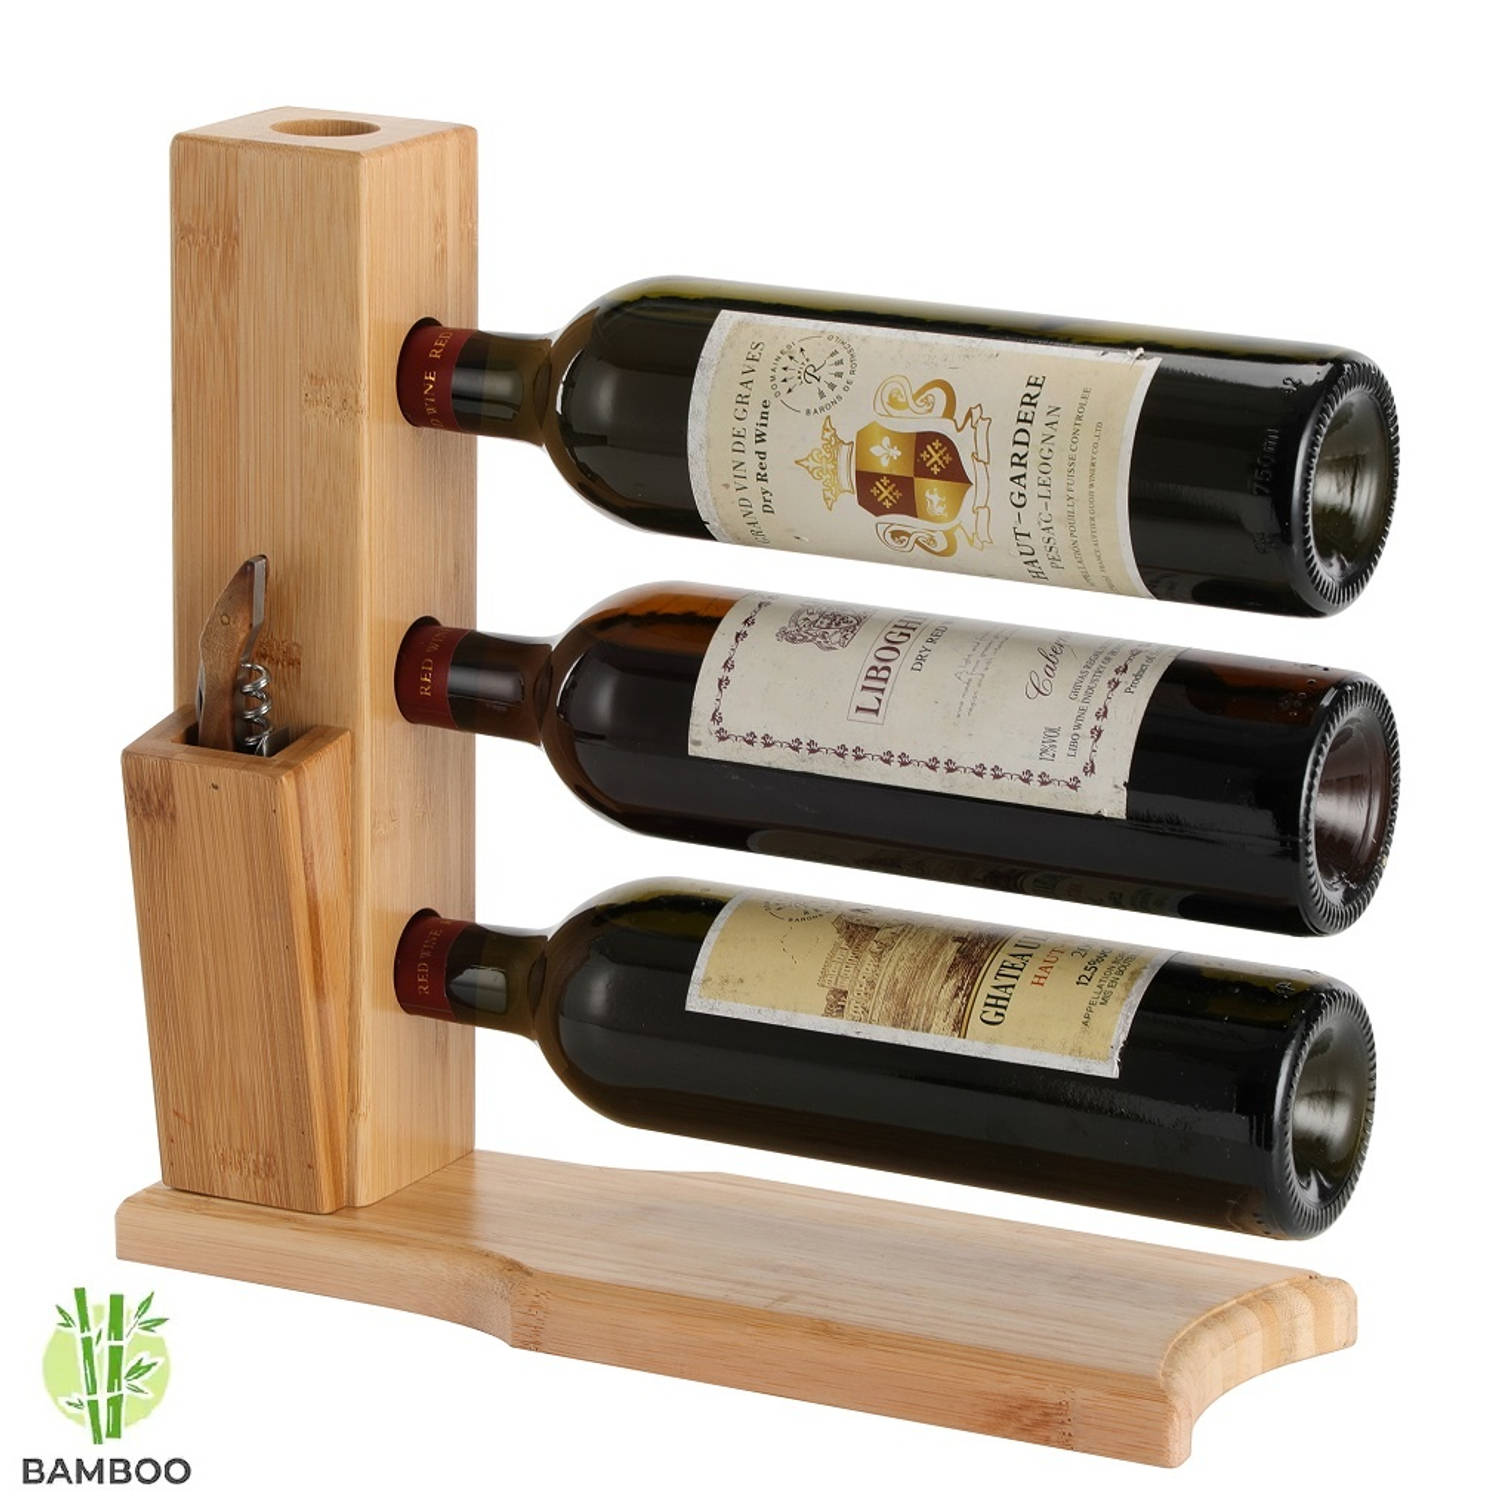 Echter genoeg Beleefd Wijnrek van bamboe hout voor 3 flessen wijn - Design wijnflessenrek - |  Blokker